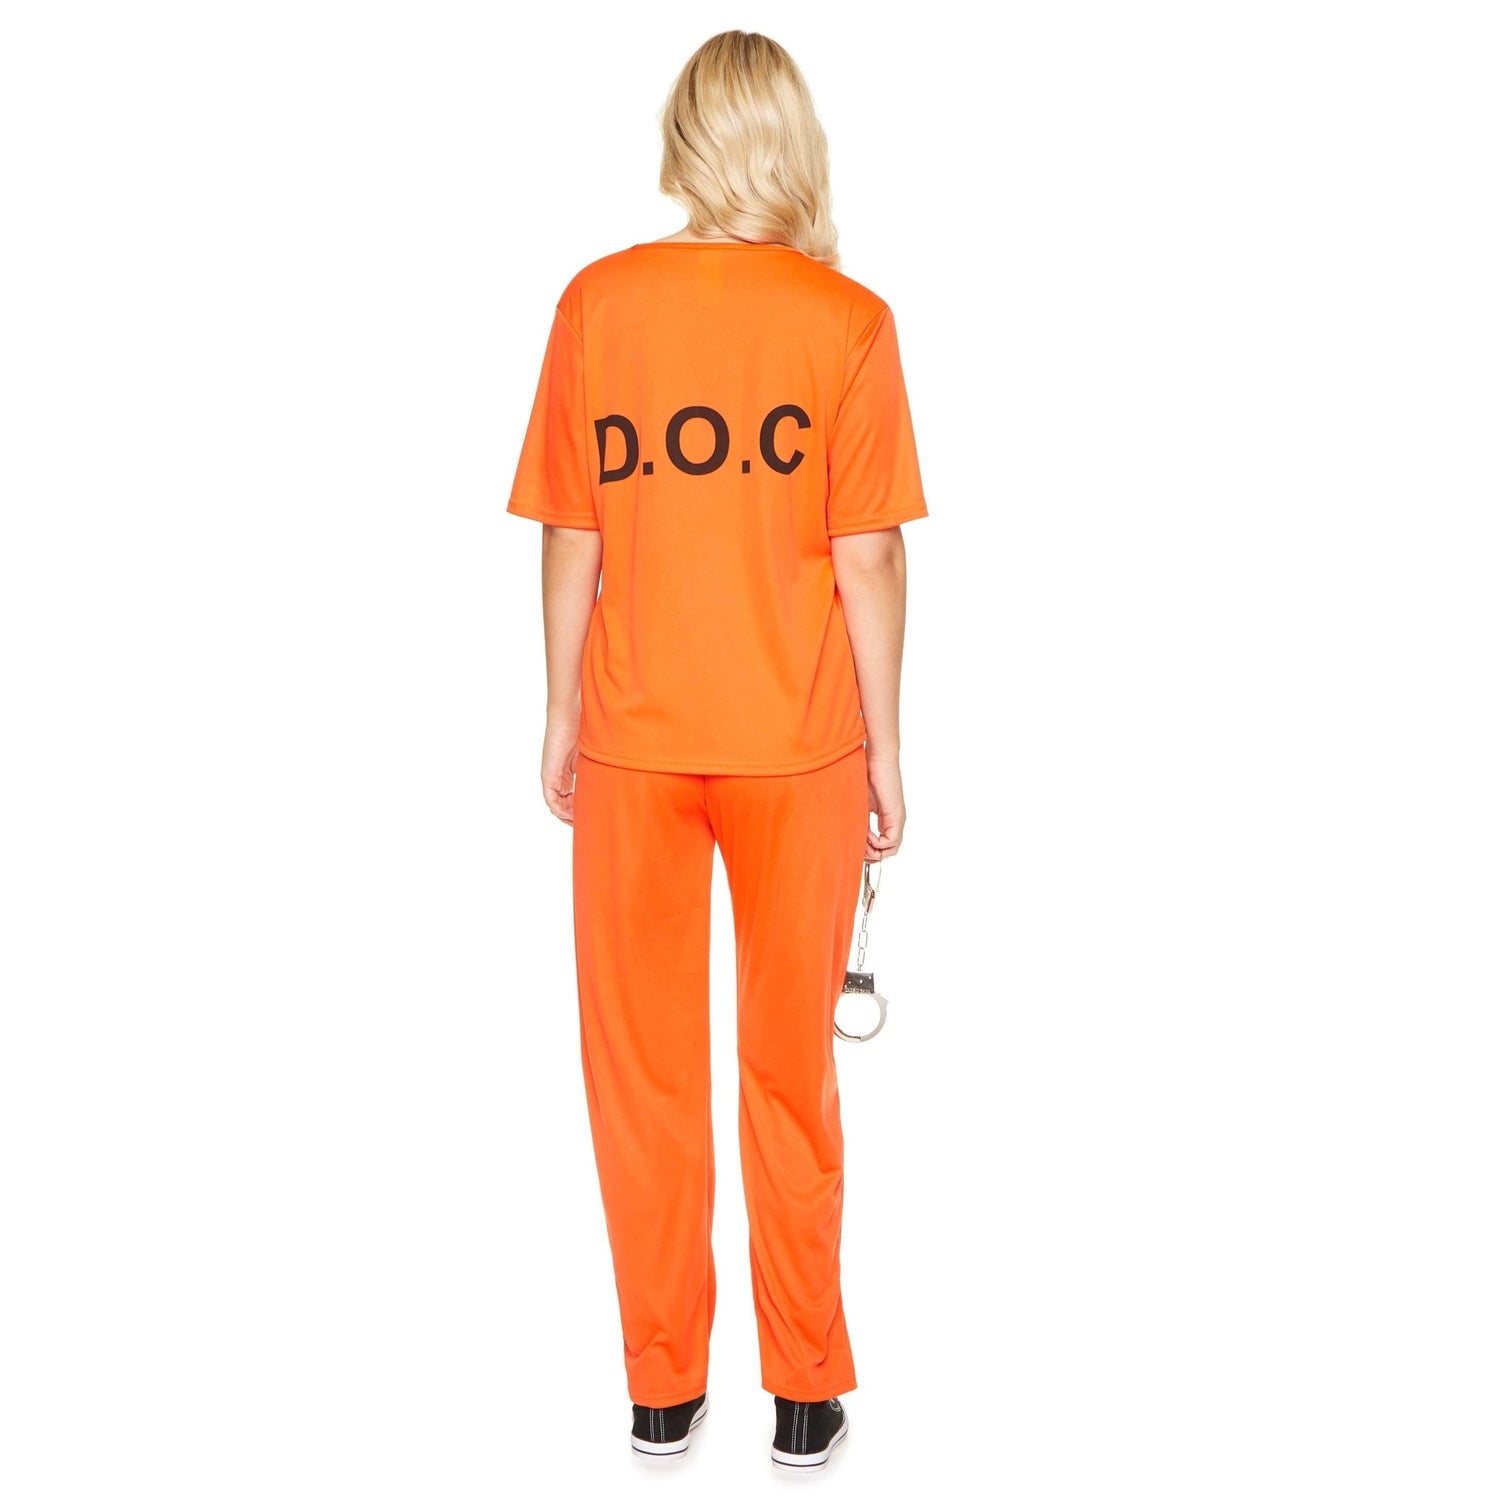 Orange Prisoner Costume - Party Australia